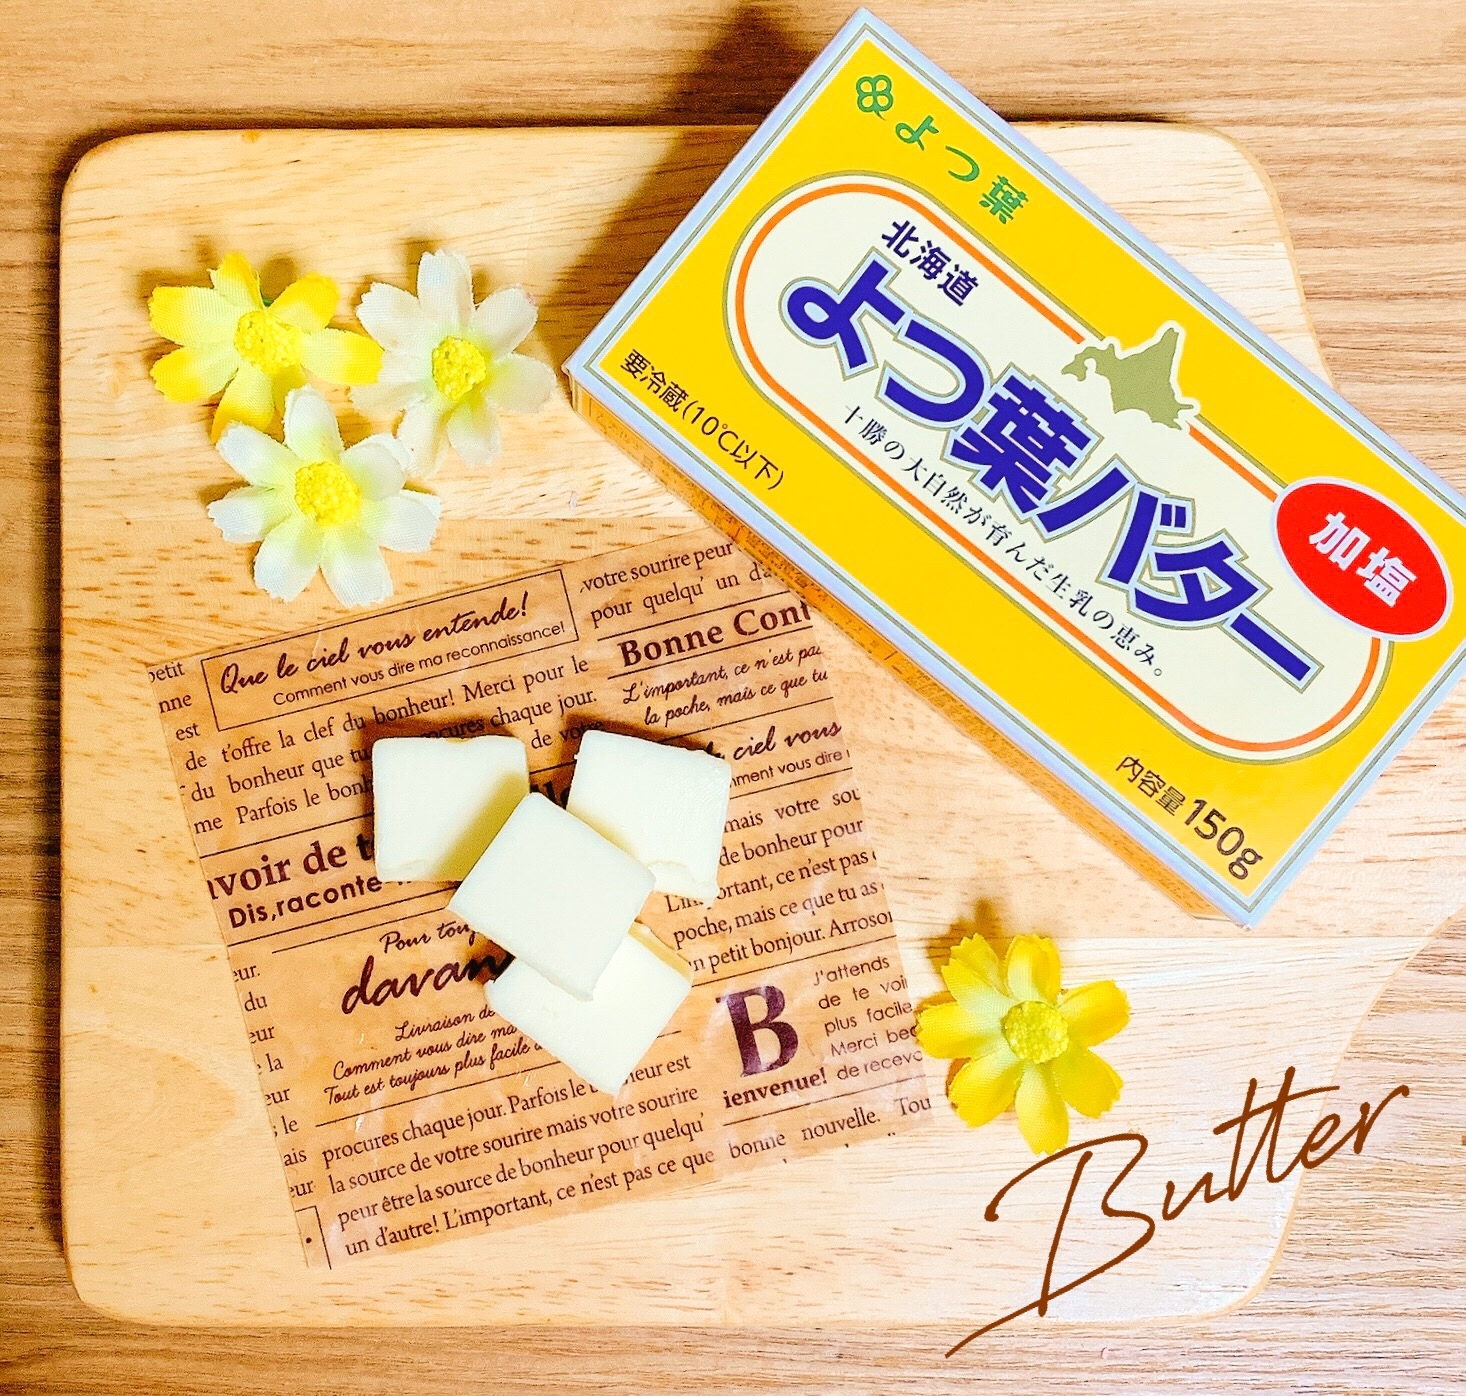 包丁に付かない♡バターorチーズの切り方と保存方法